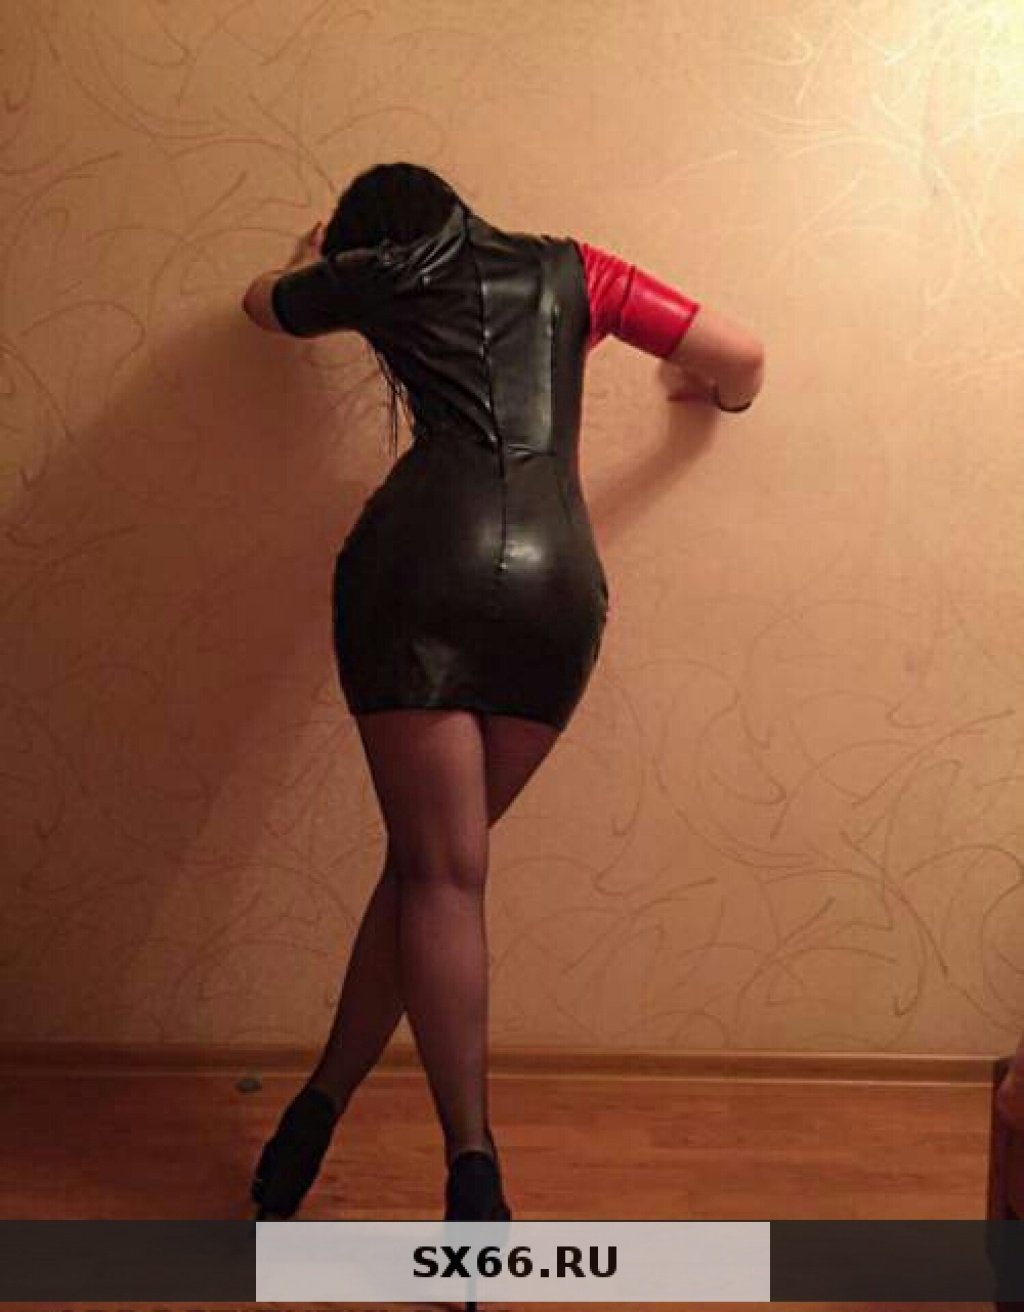 Вика: Проститутка-индивидуалка в Екатеринбурге